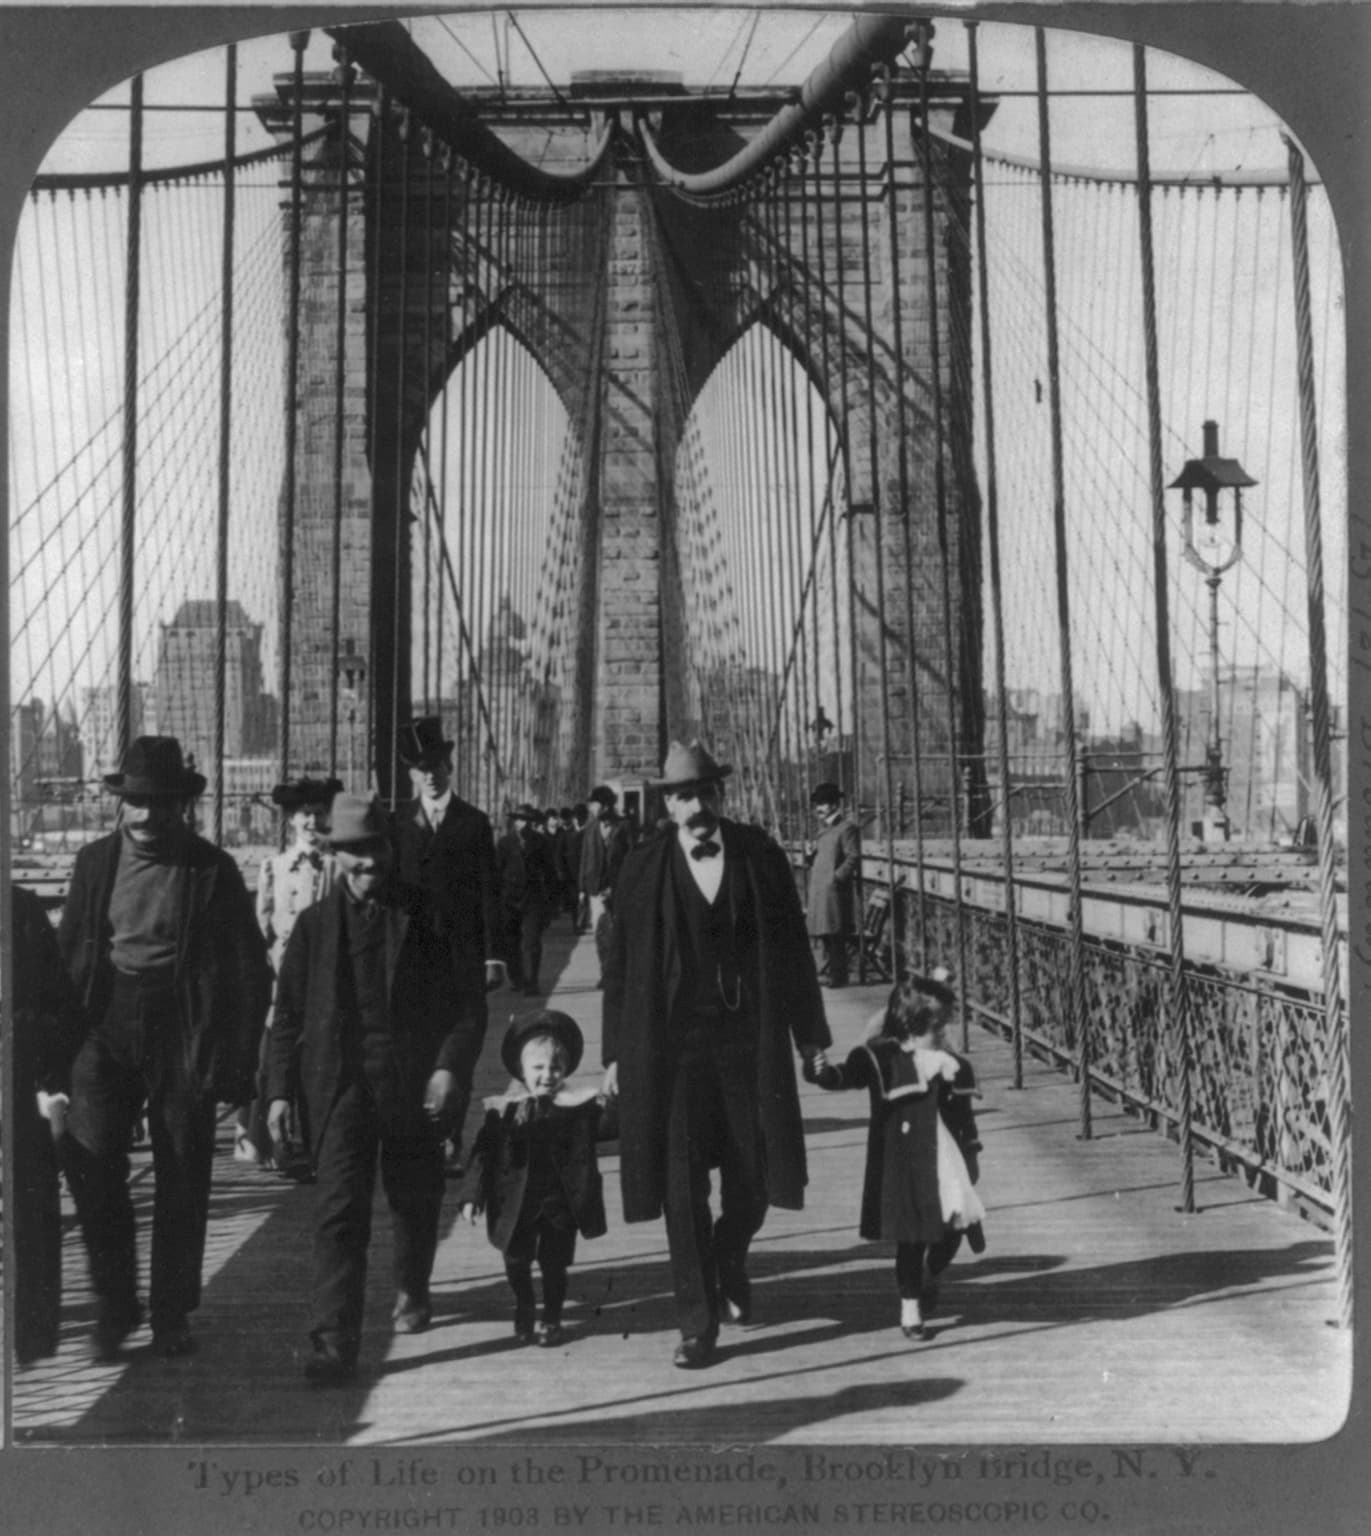 The Promenade, Brooklyn Bridge, 1903, American Stereoscopic Co.